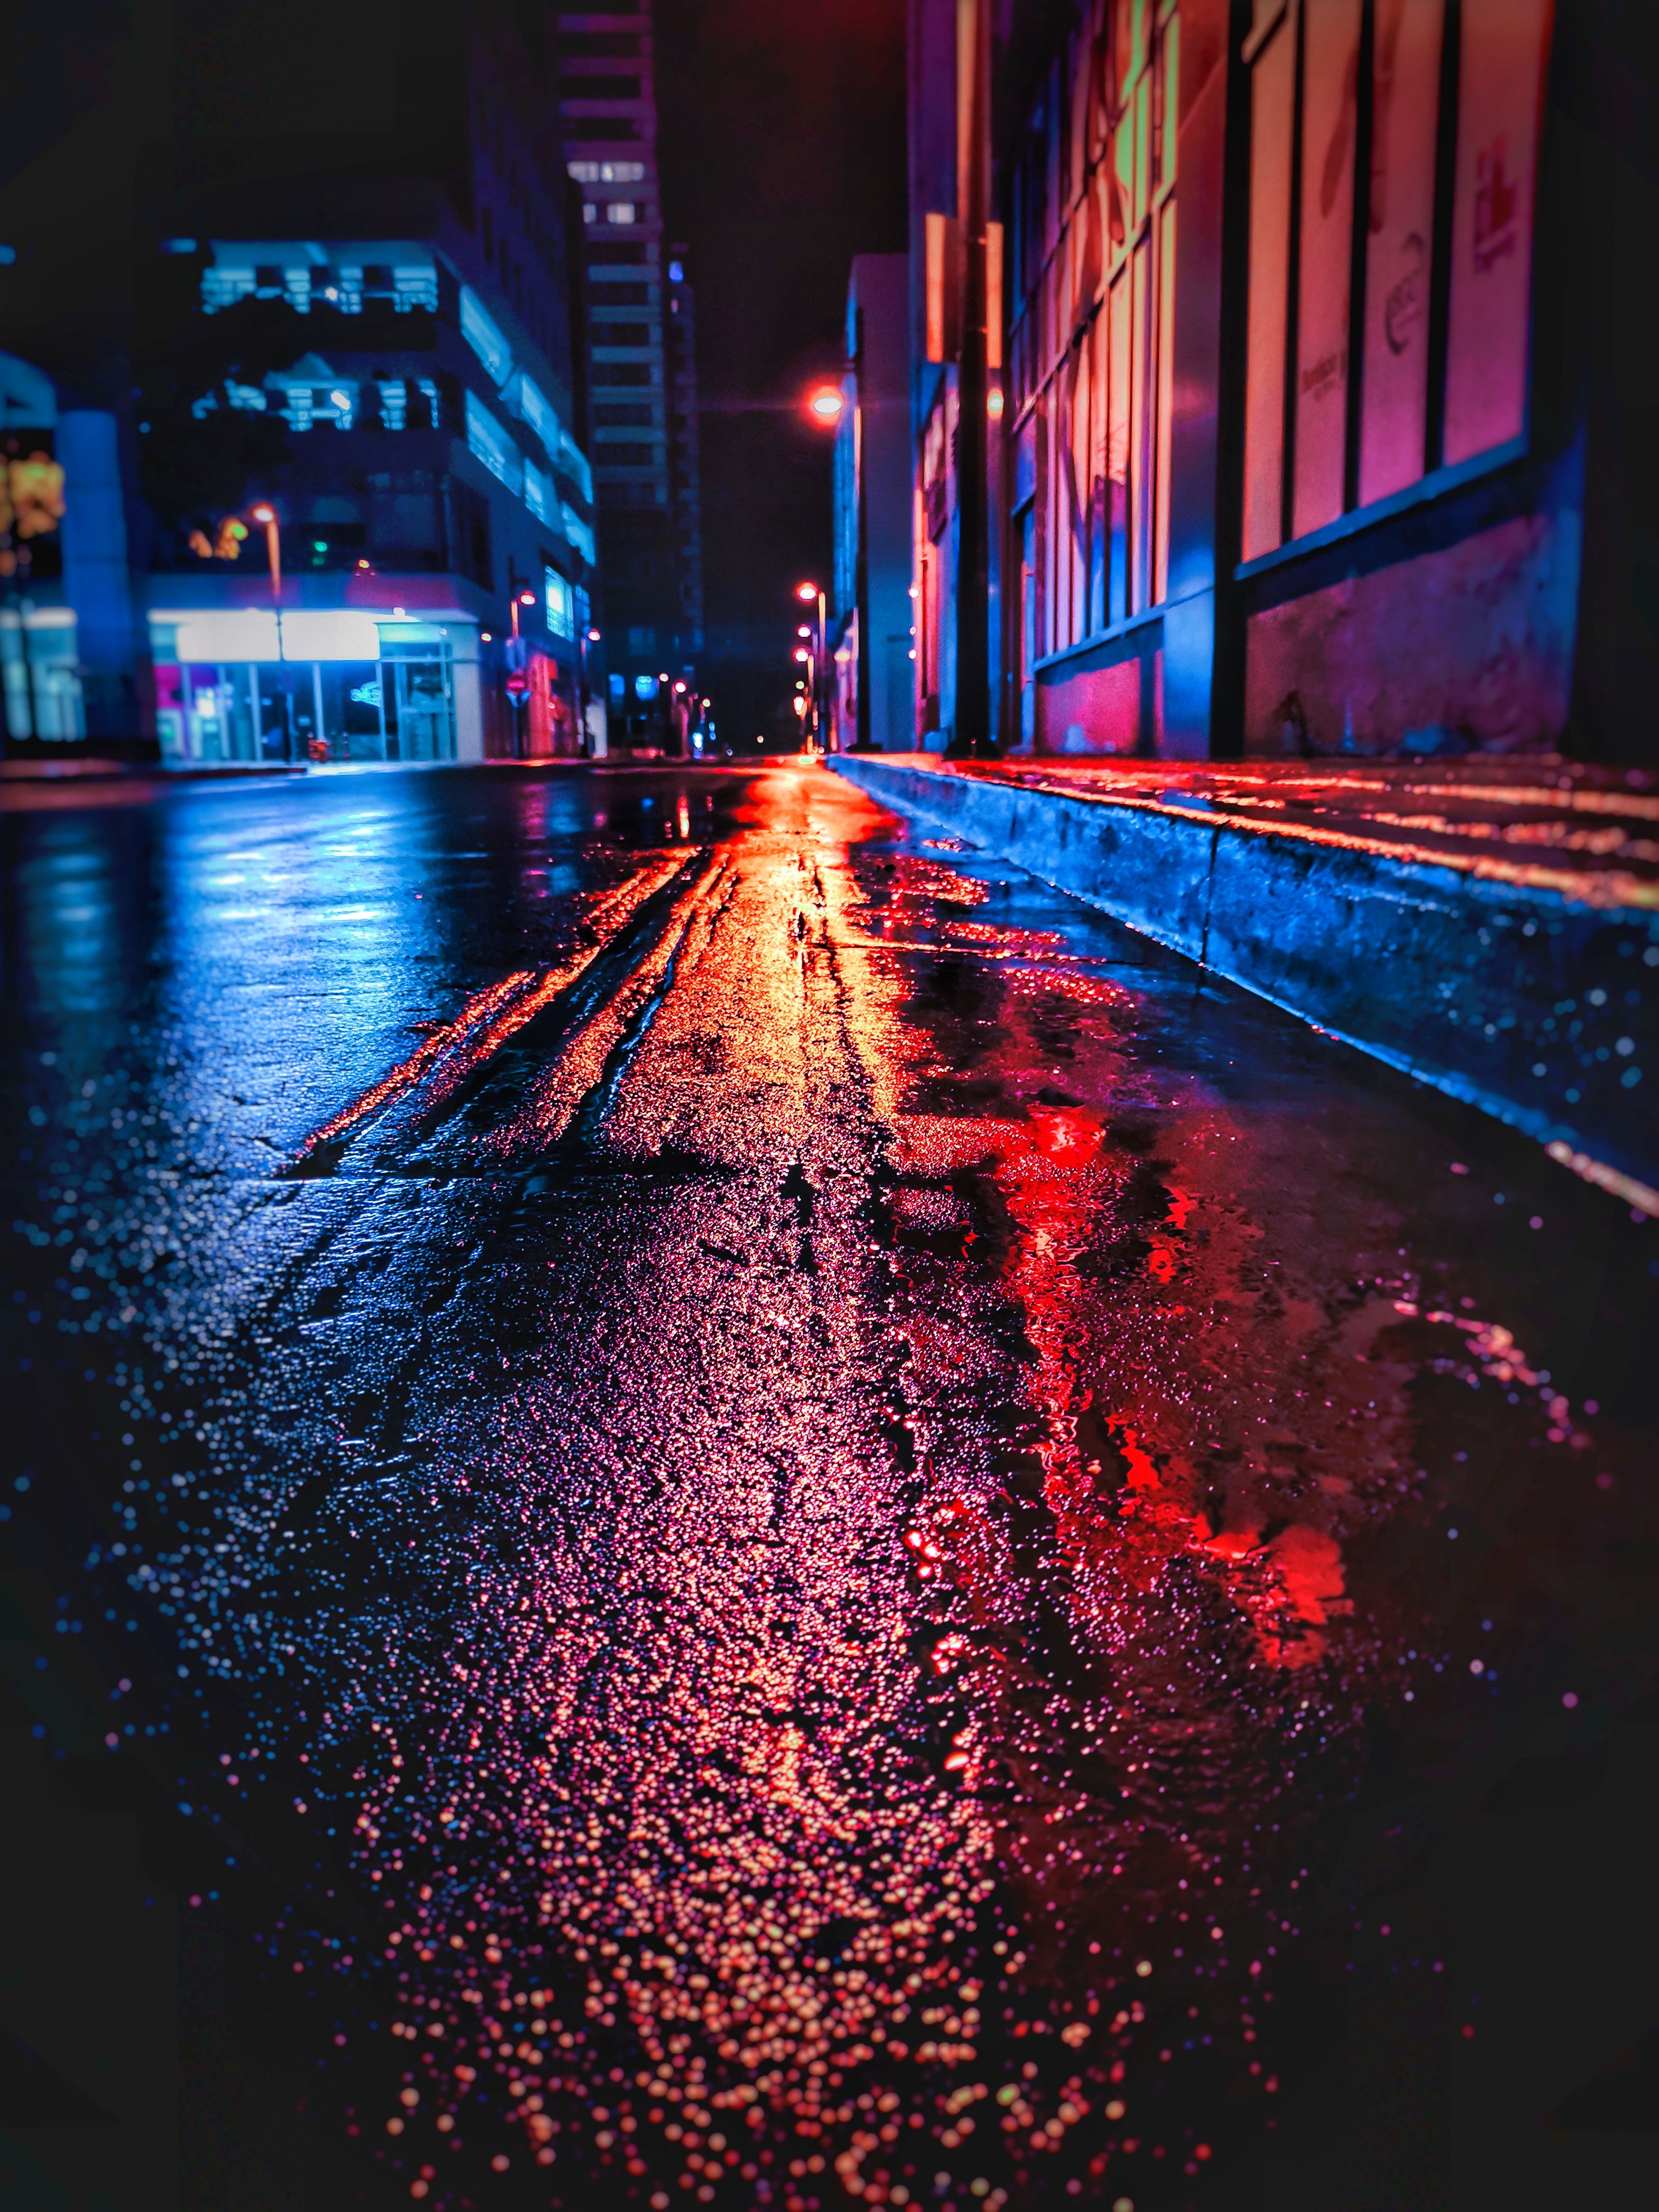 Download wallpaper 4330x5773 street, night, wet, neon, city HD